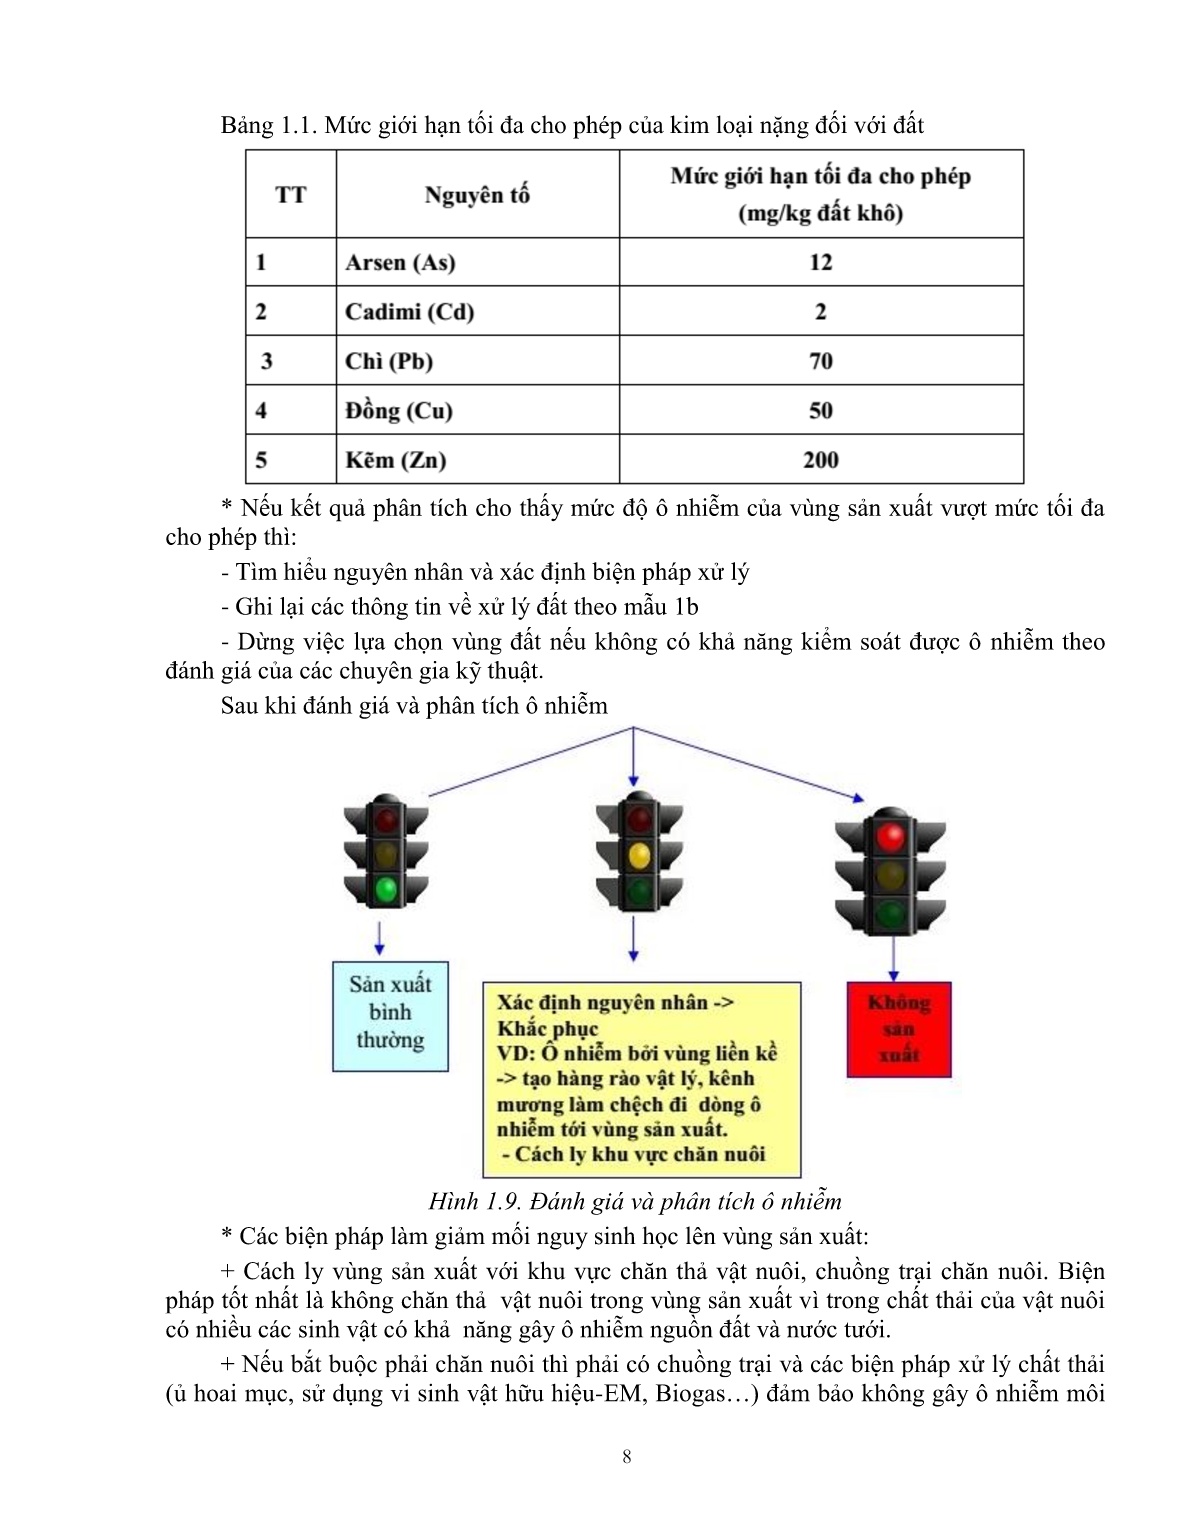 Giáo trình mô đun Hướng dẫn sản xuất rau an toàn theo hướng Vietgap (Trình độ: Đào tạo dưới 03 tháng) trang 9